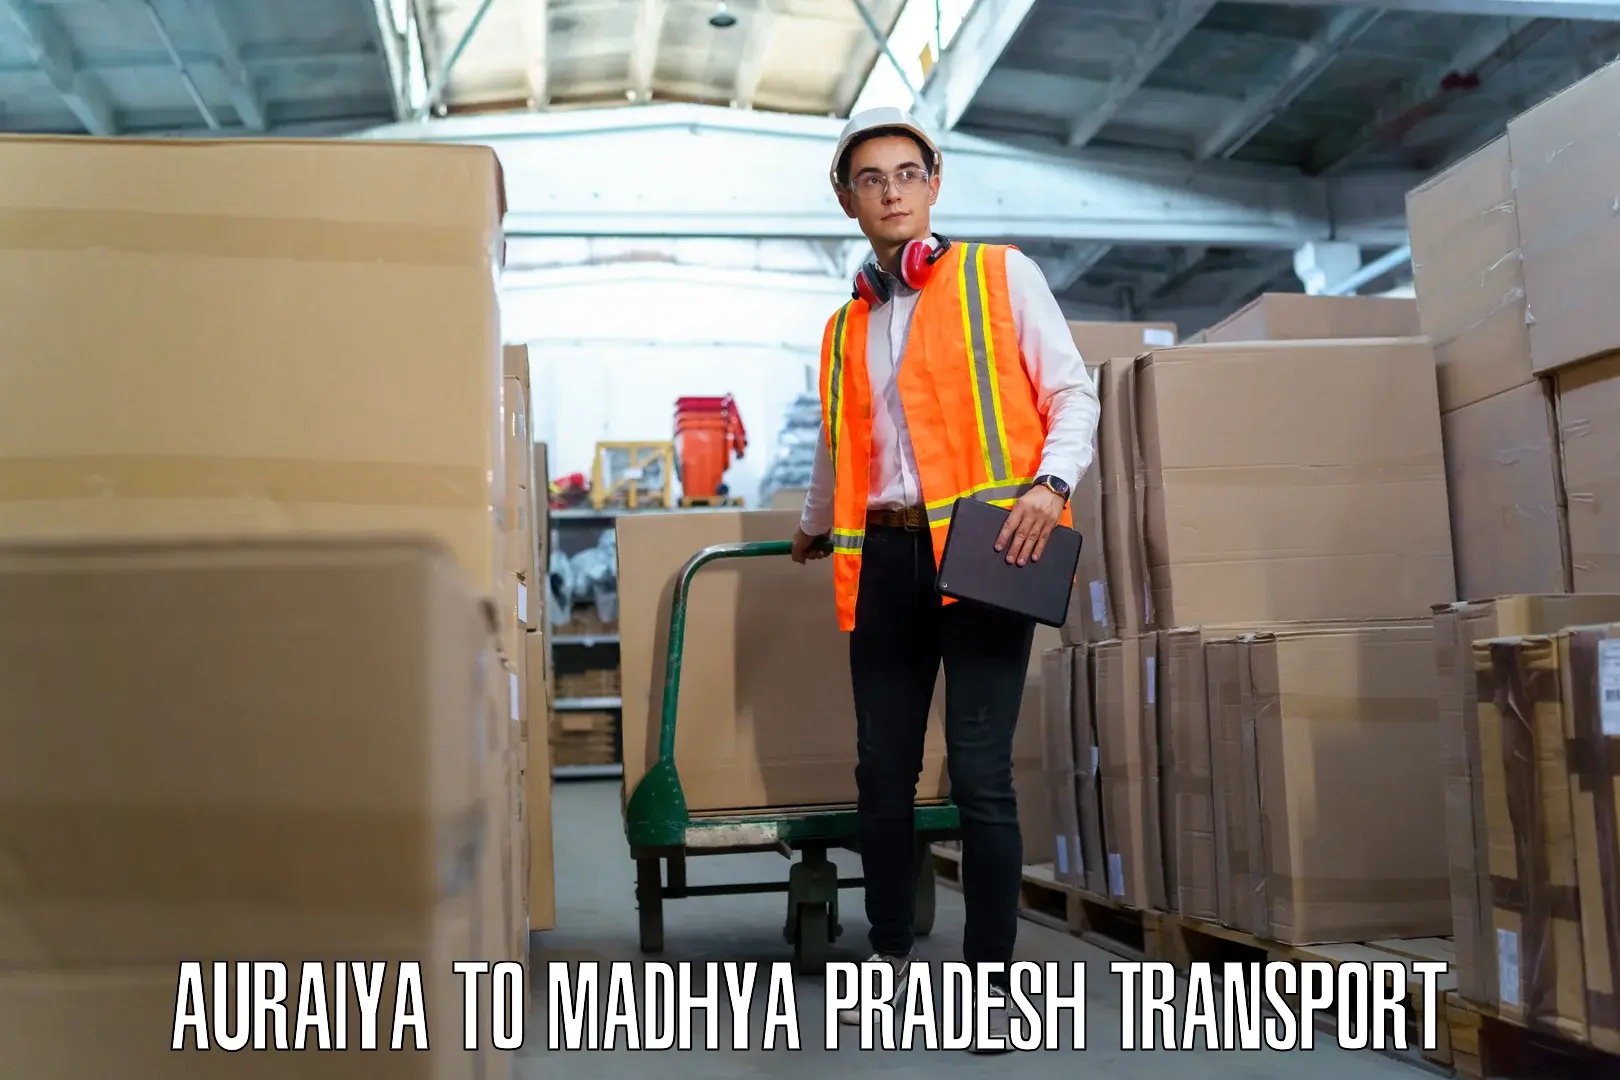 Furniture transport service Auraiya to Kukshi